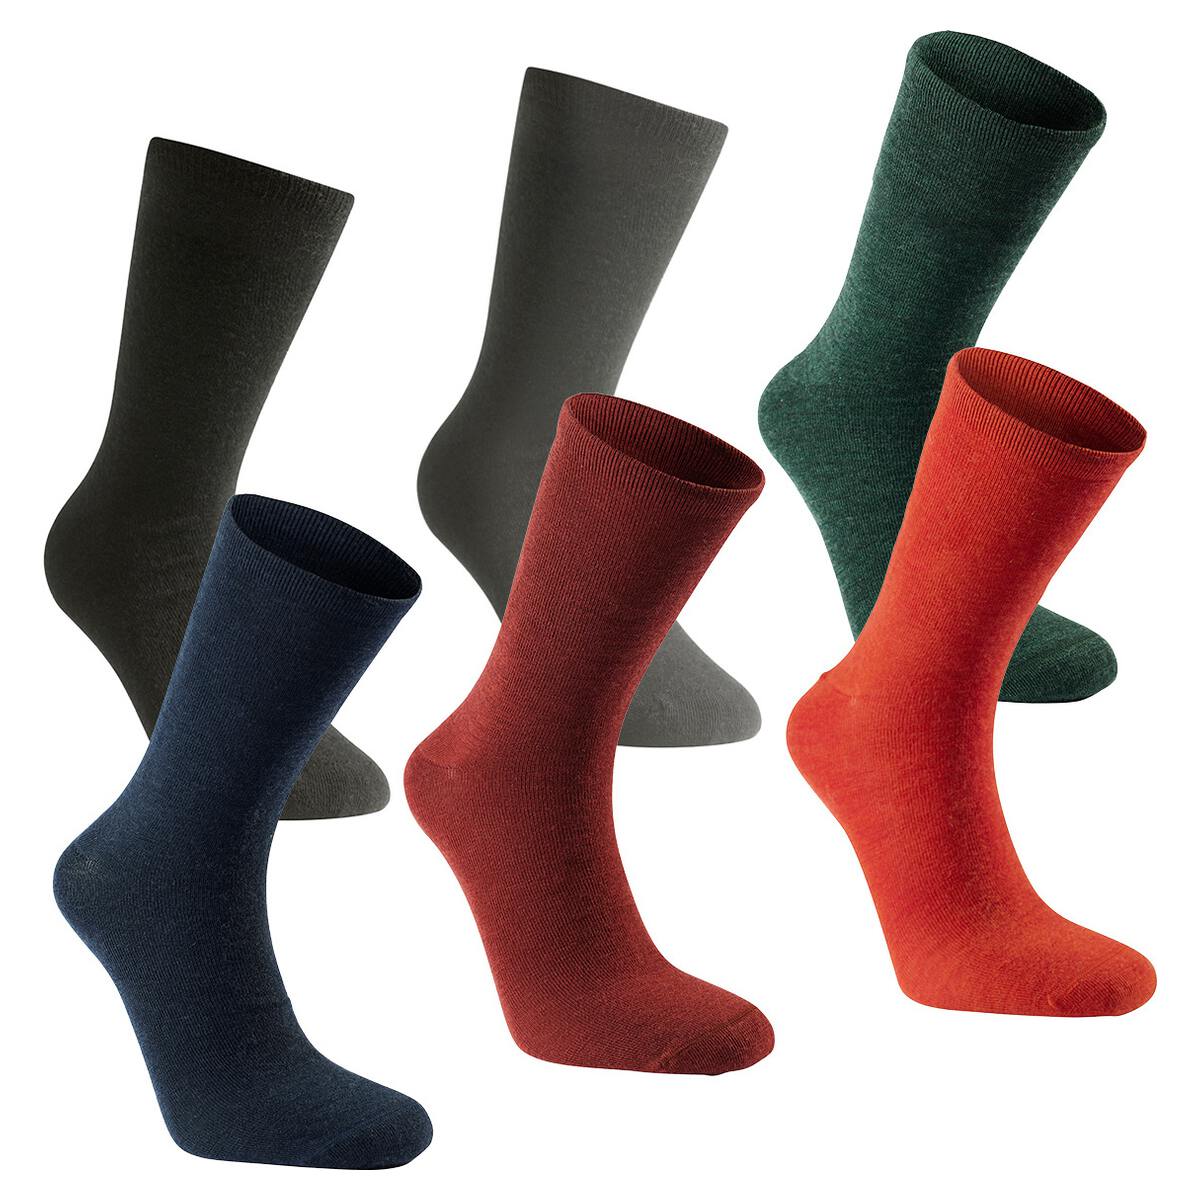 Woolpower Liner Socks